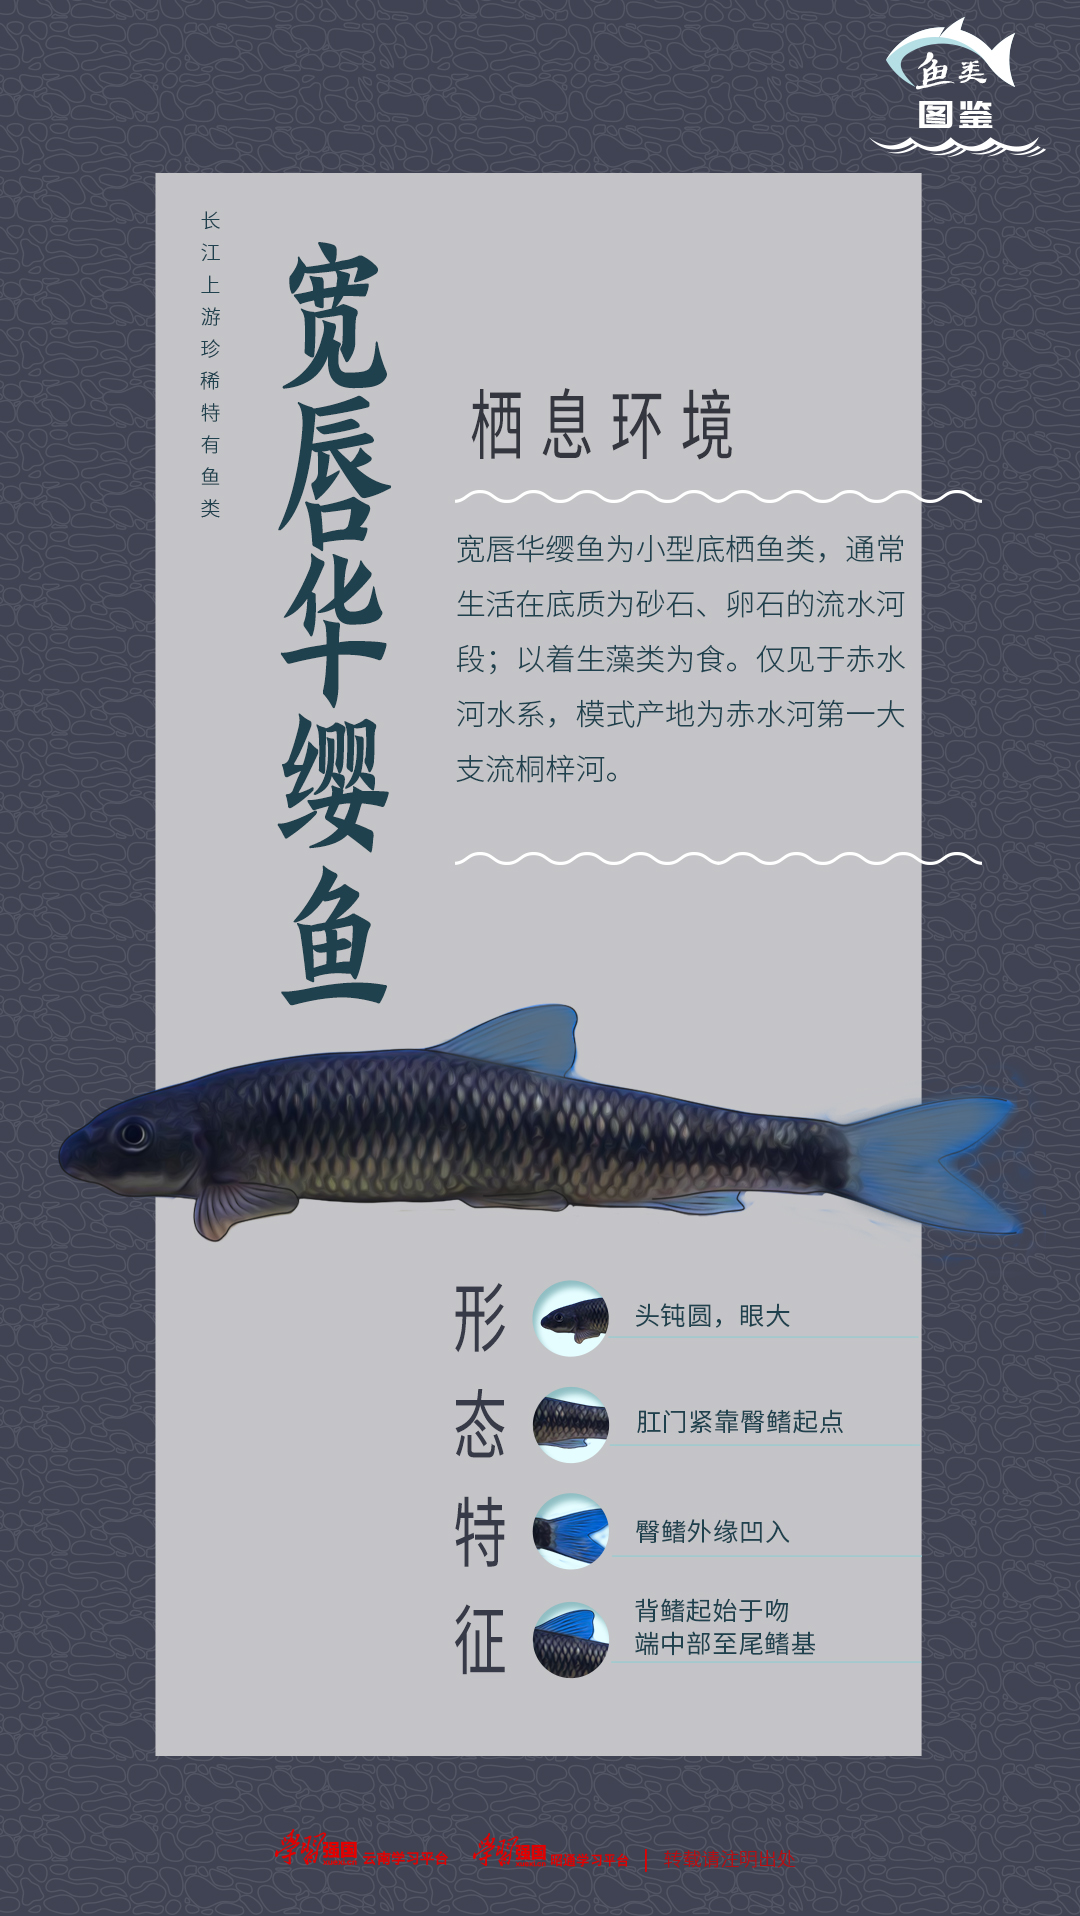 澜沧江鱼种类图片介绍图片